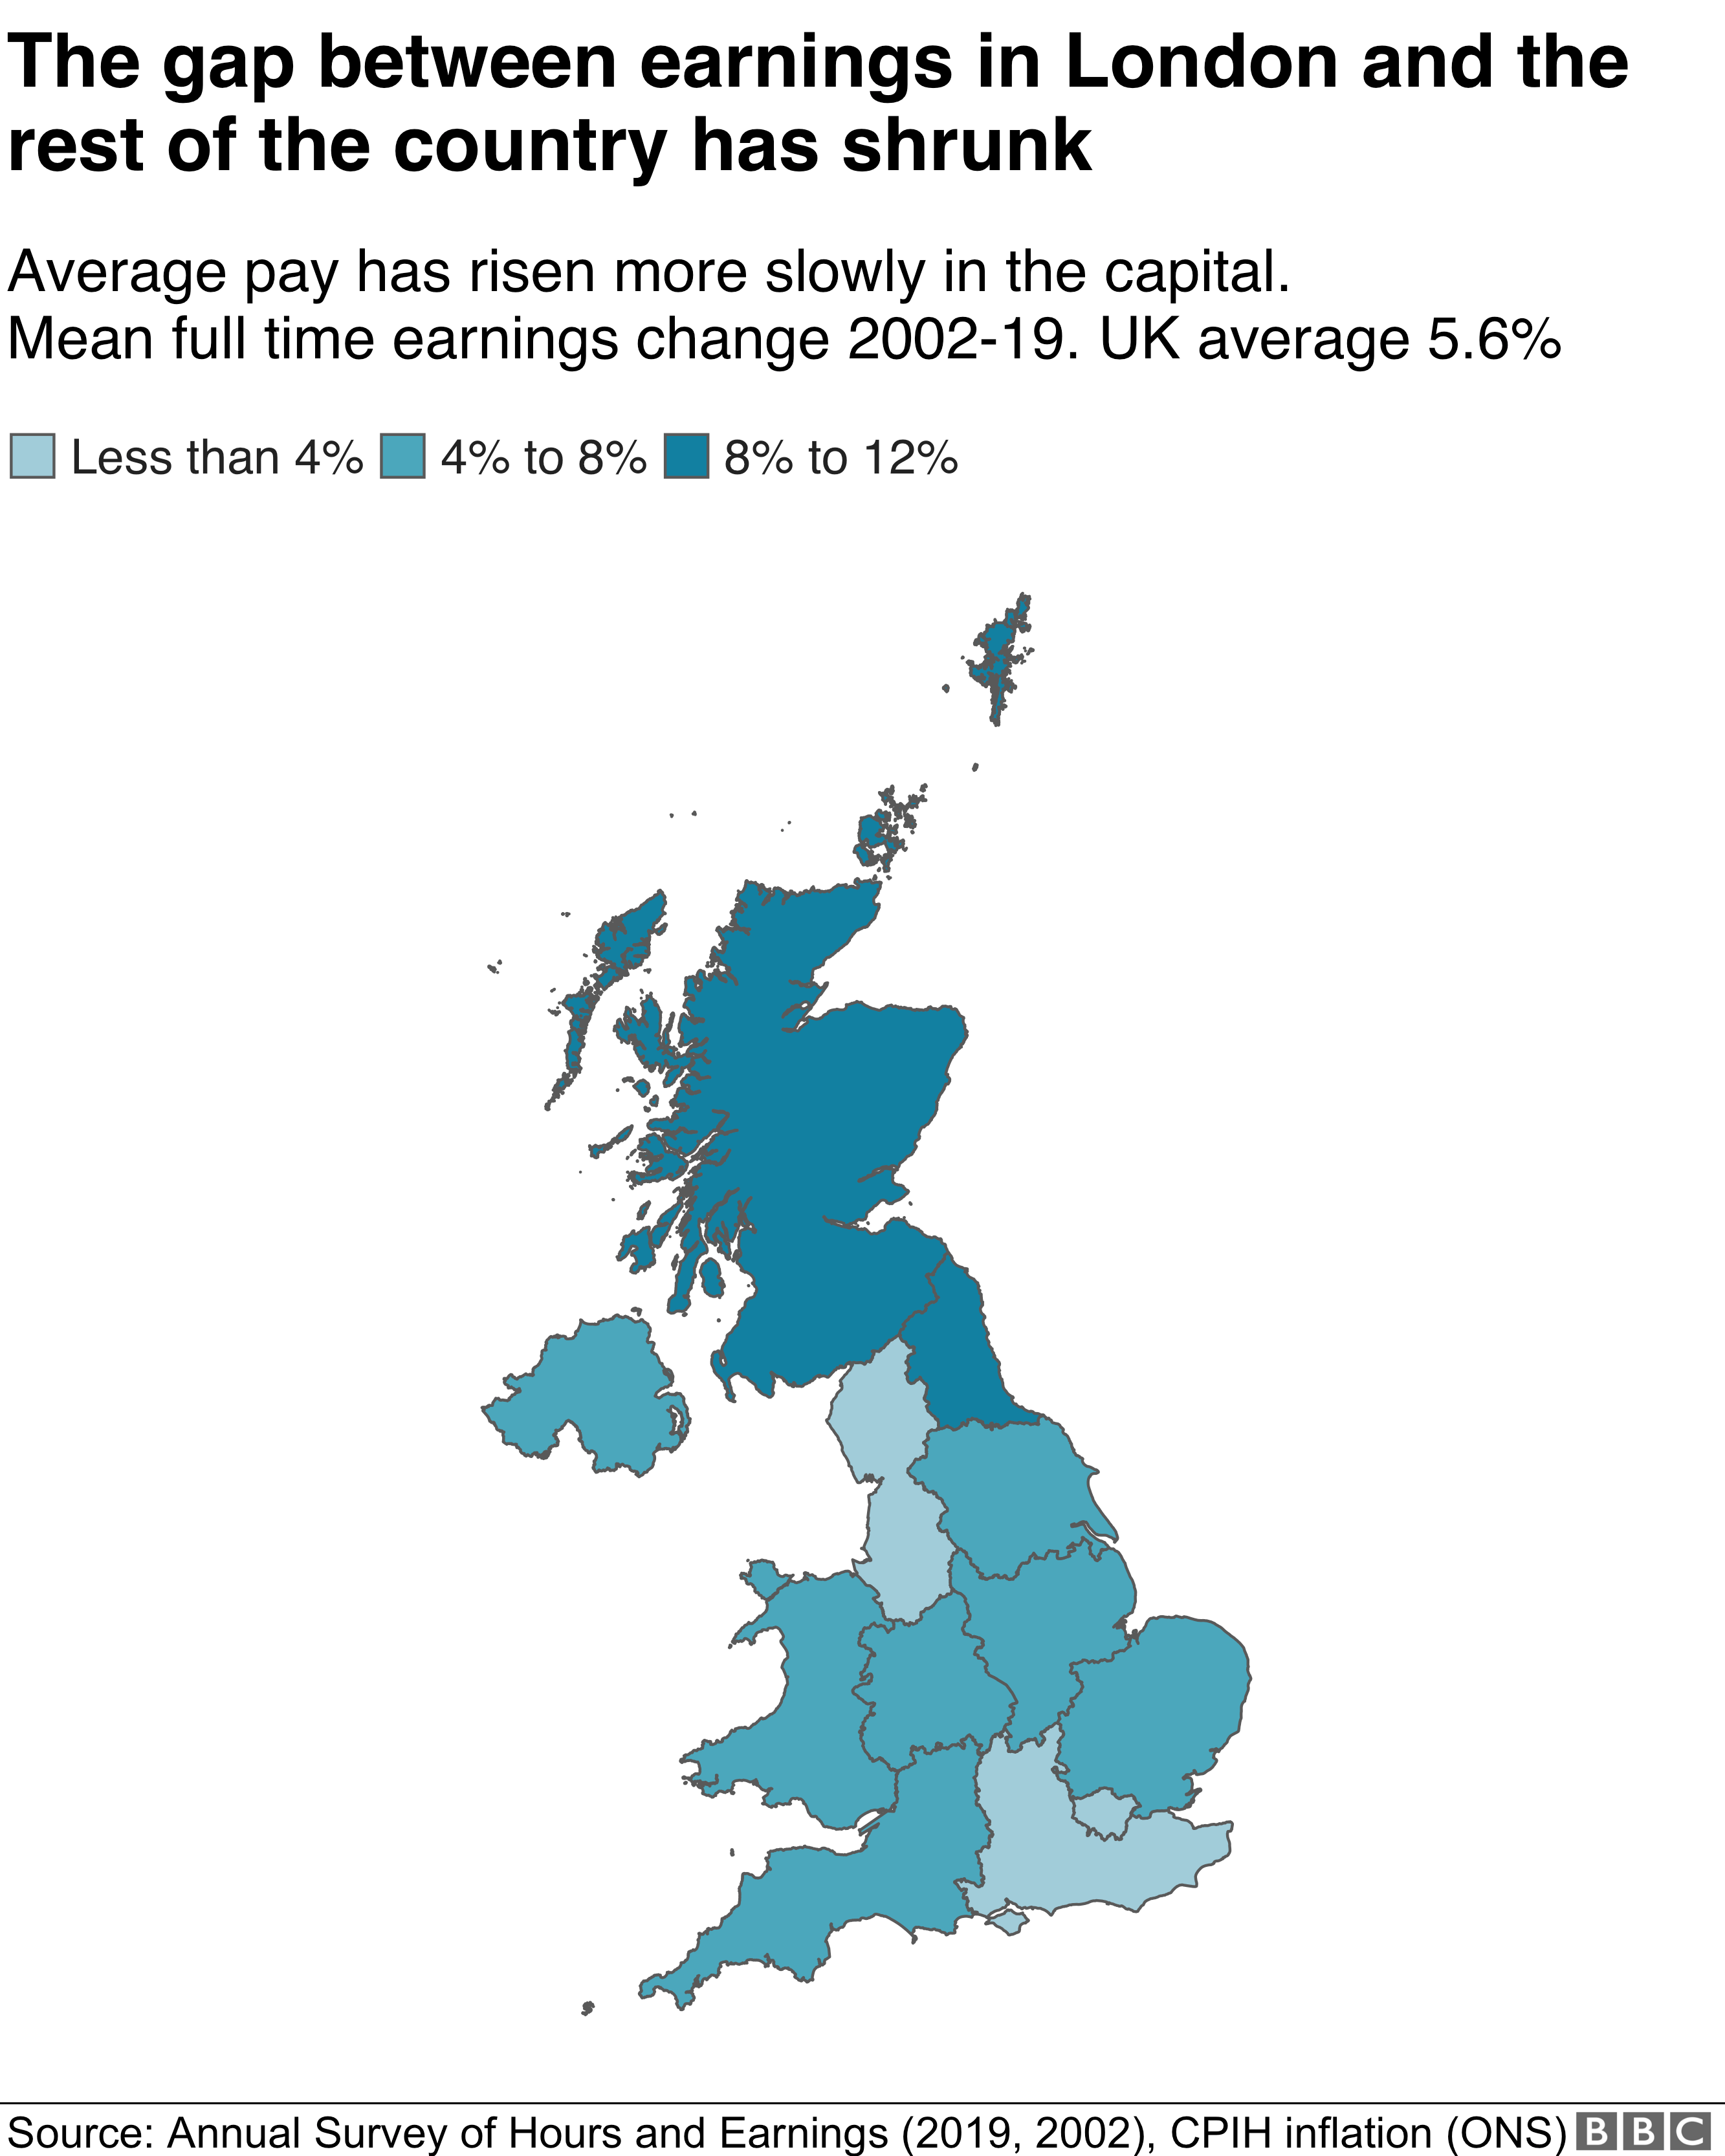 Изменение доходов, карта регионов Великобритании